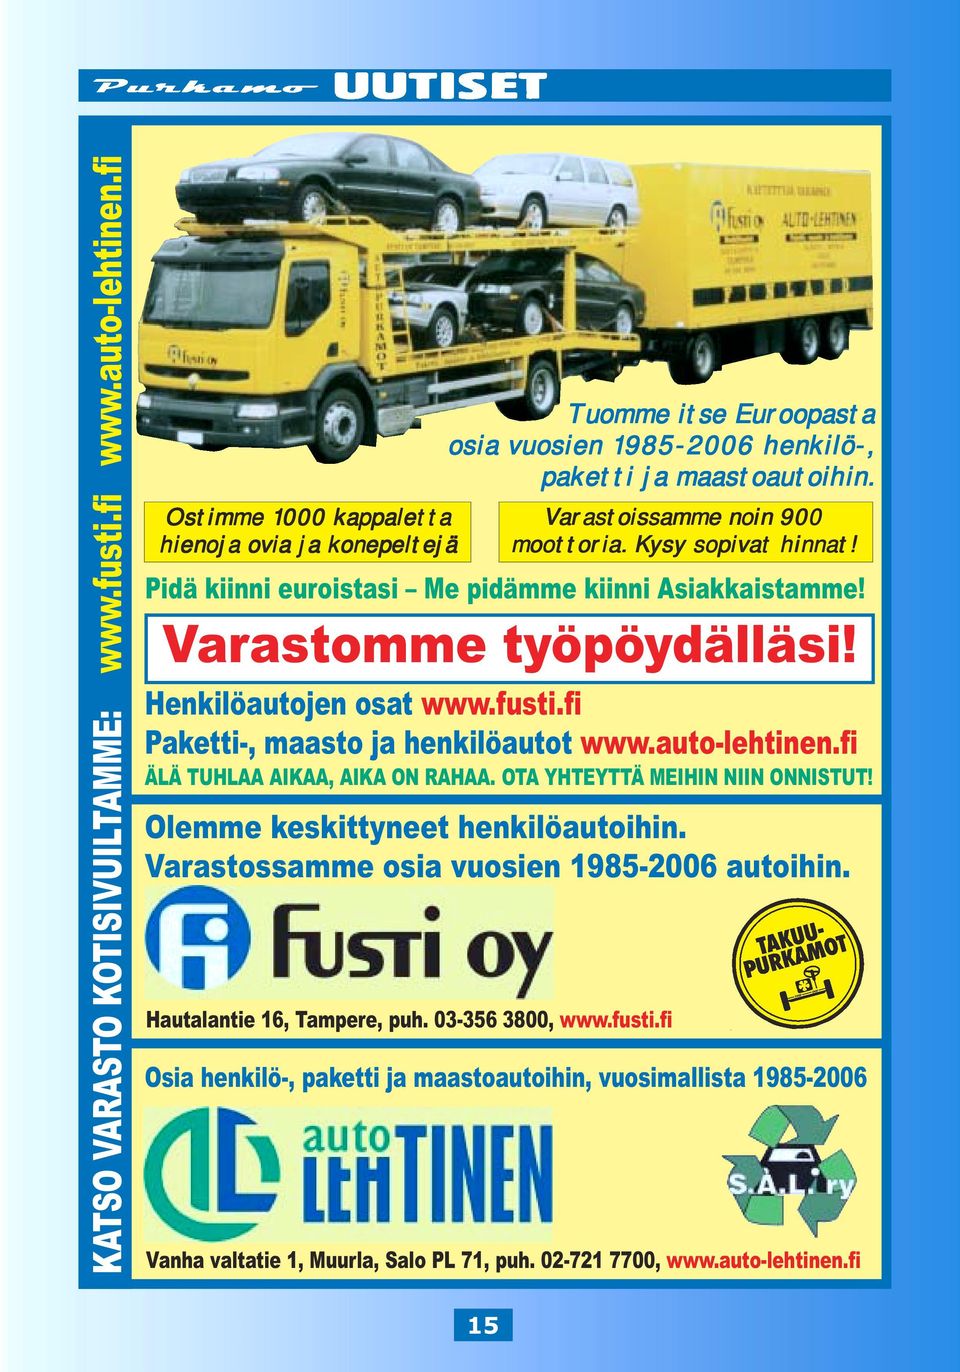 Olemme keskittyneet henkilöautoihin. Varastossamme osia vuosien 1985-2006 autoihin. Hautalantie 16, Tampere, puh. 03-356 3800, www.fusti.fi Varastoissamme noin 900 moottoria. Kysy sopivat hinnat!